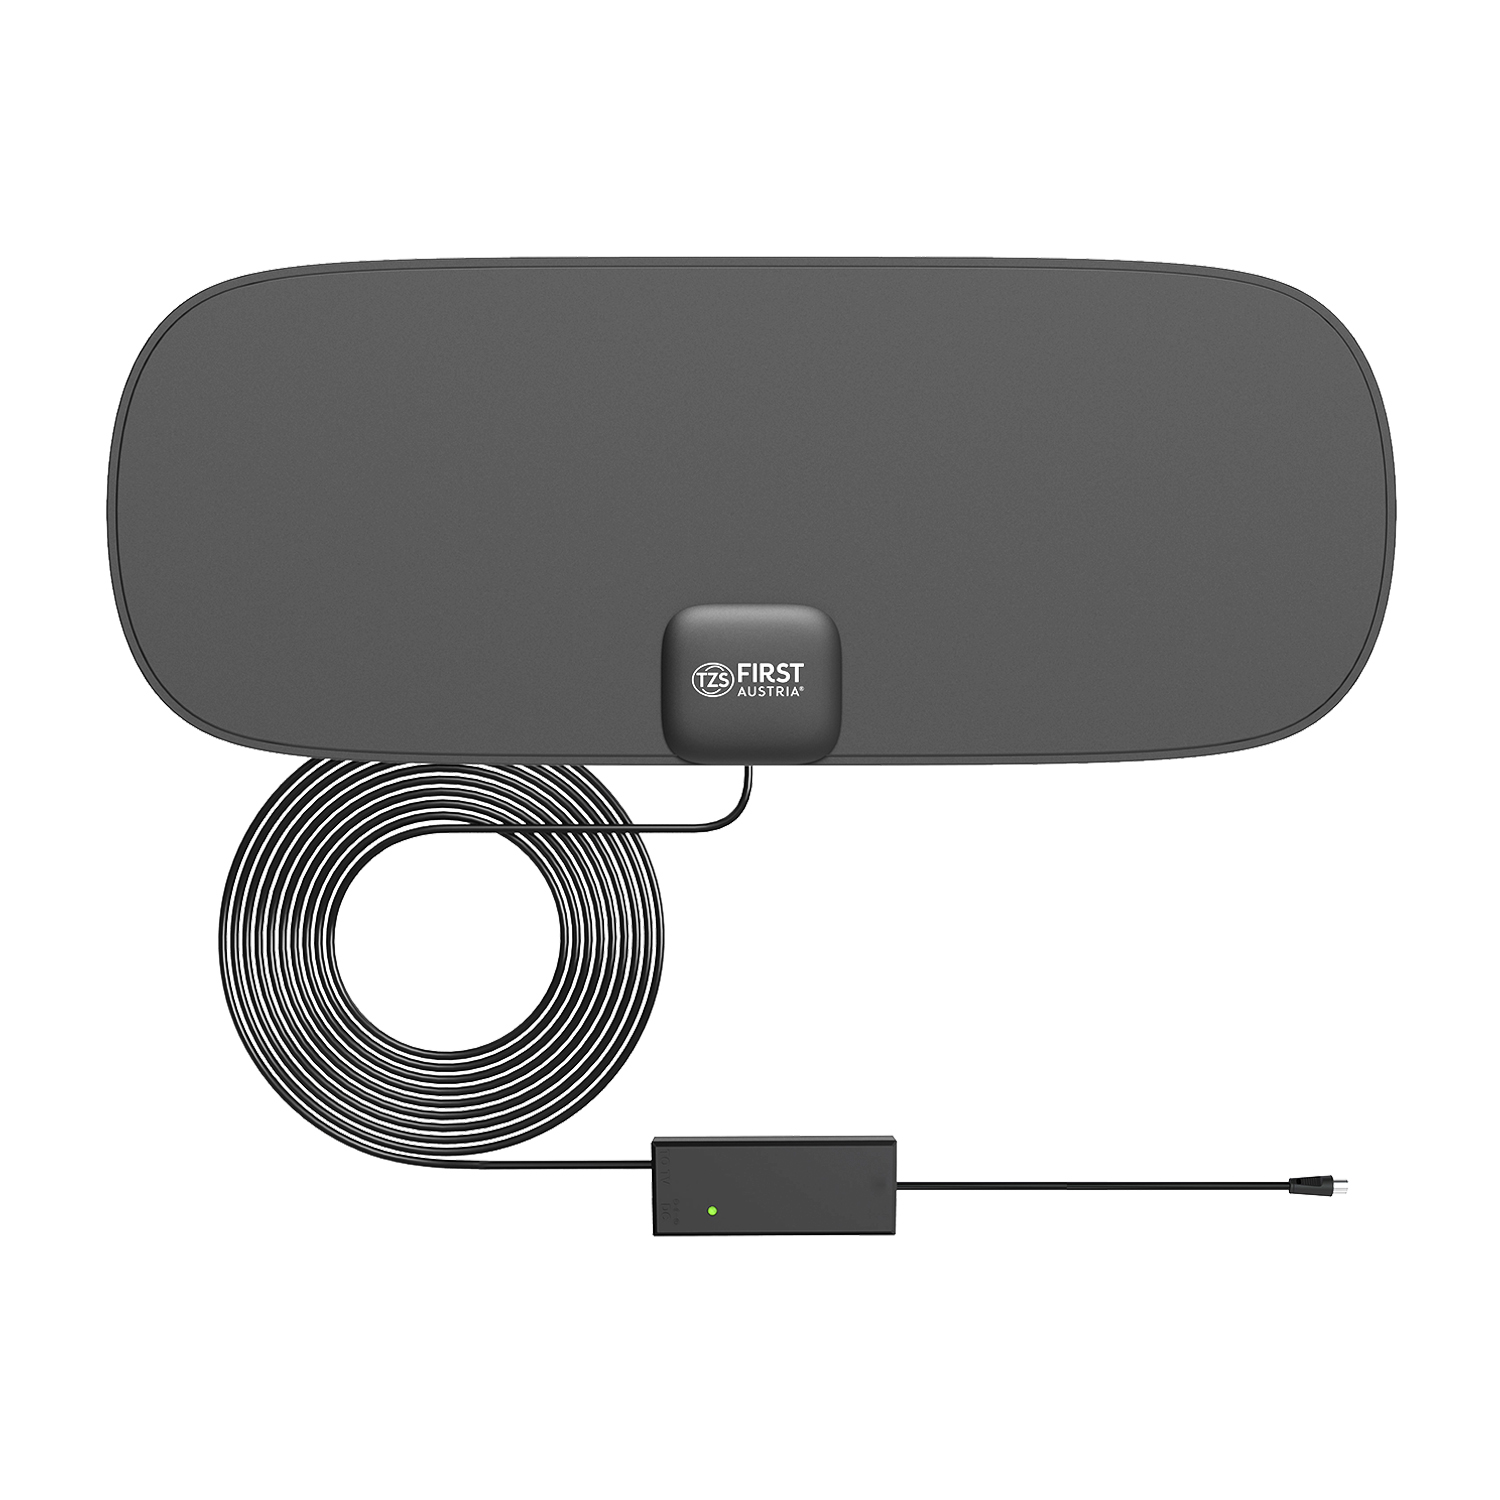 TV indoor antenna | digital | USB adapter